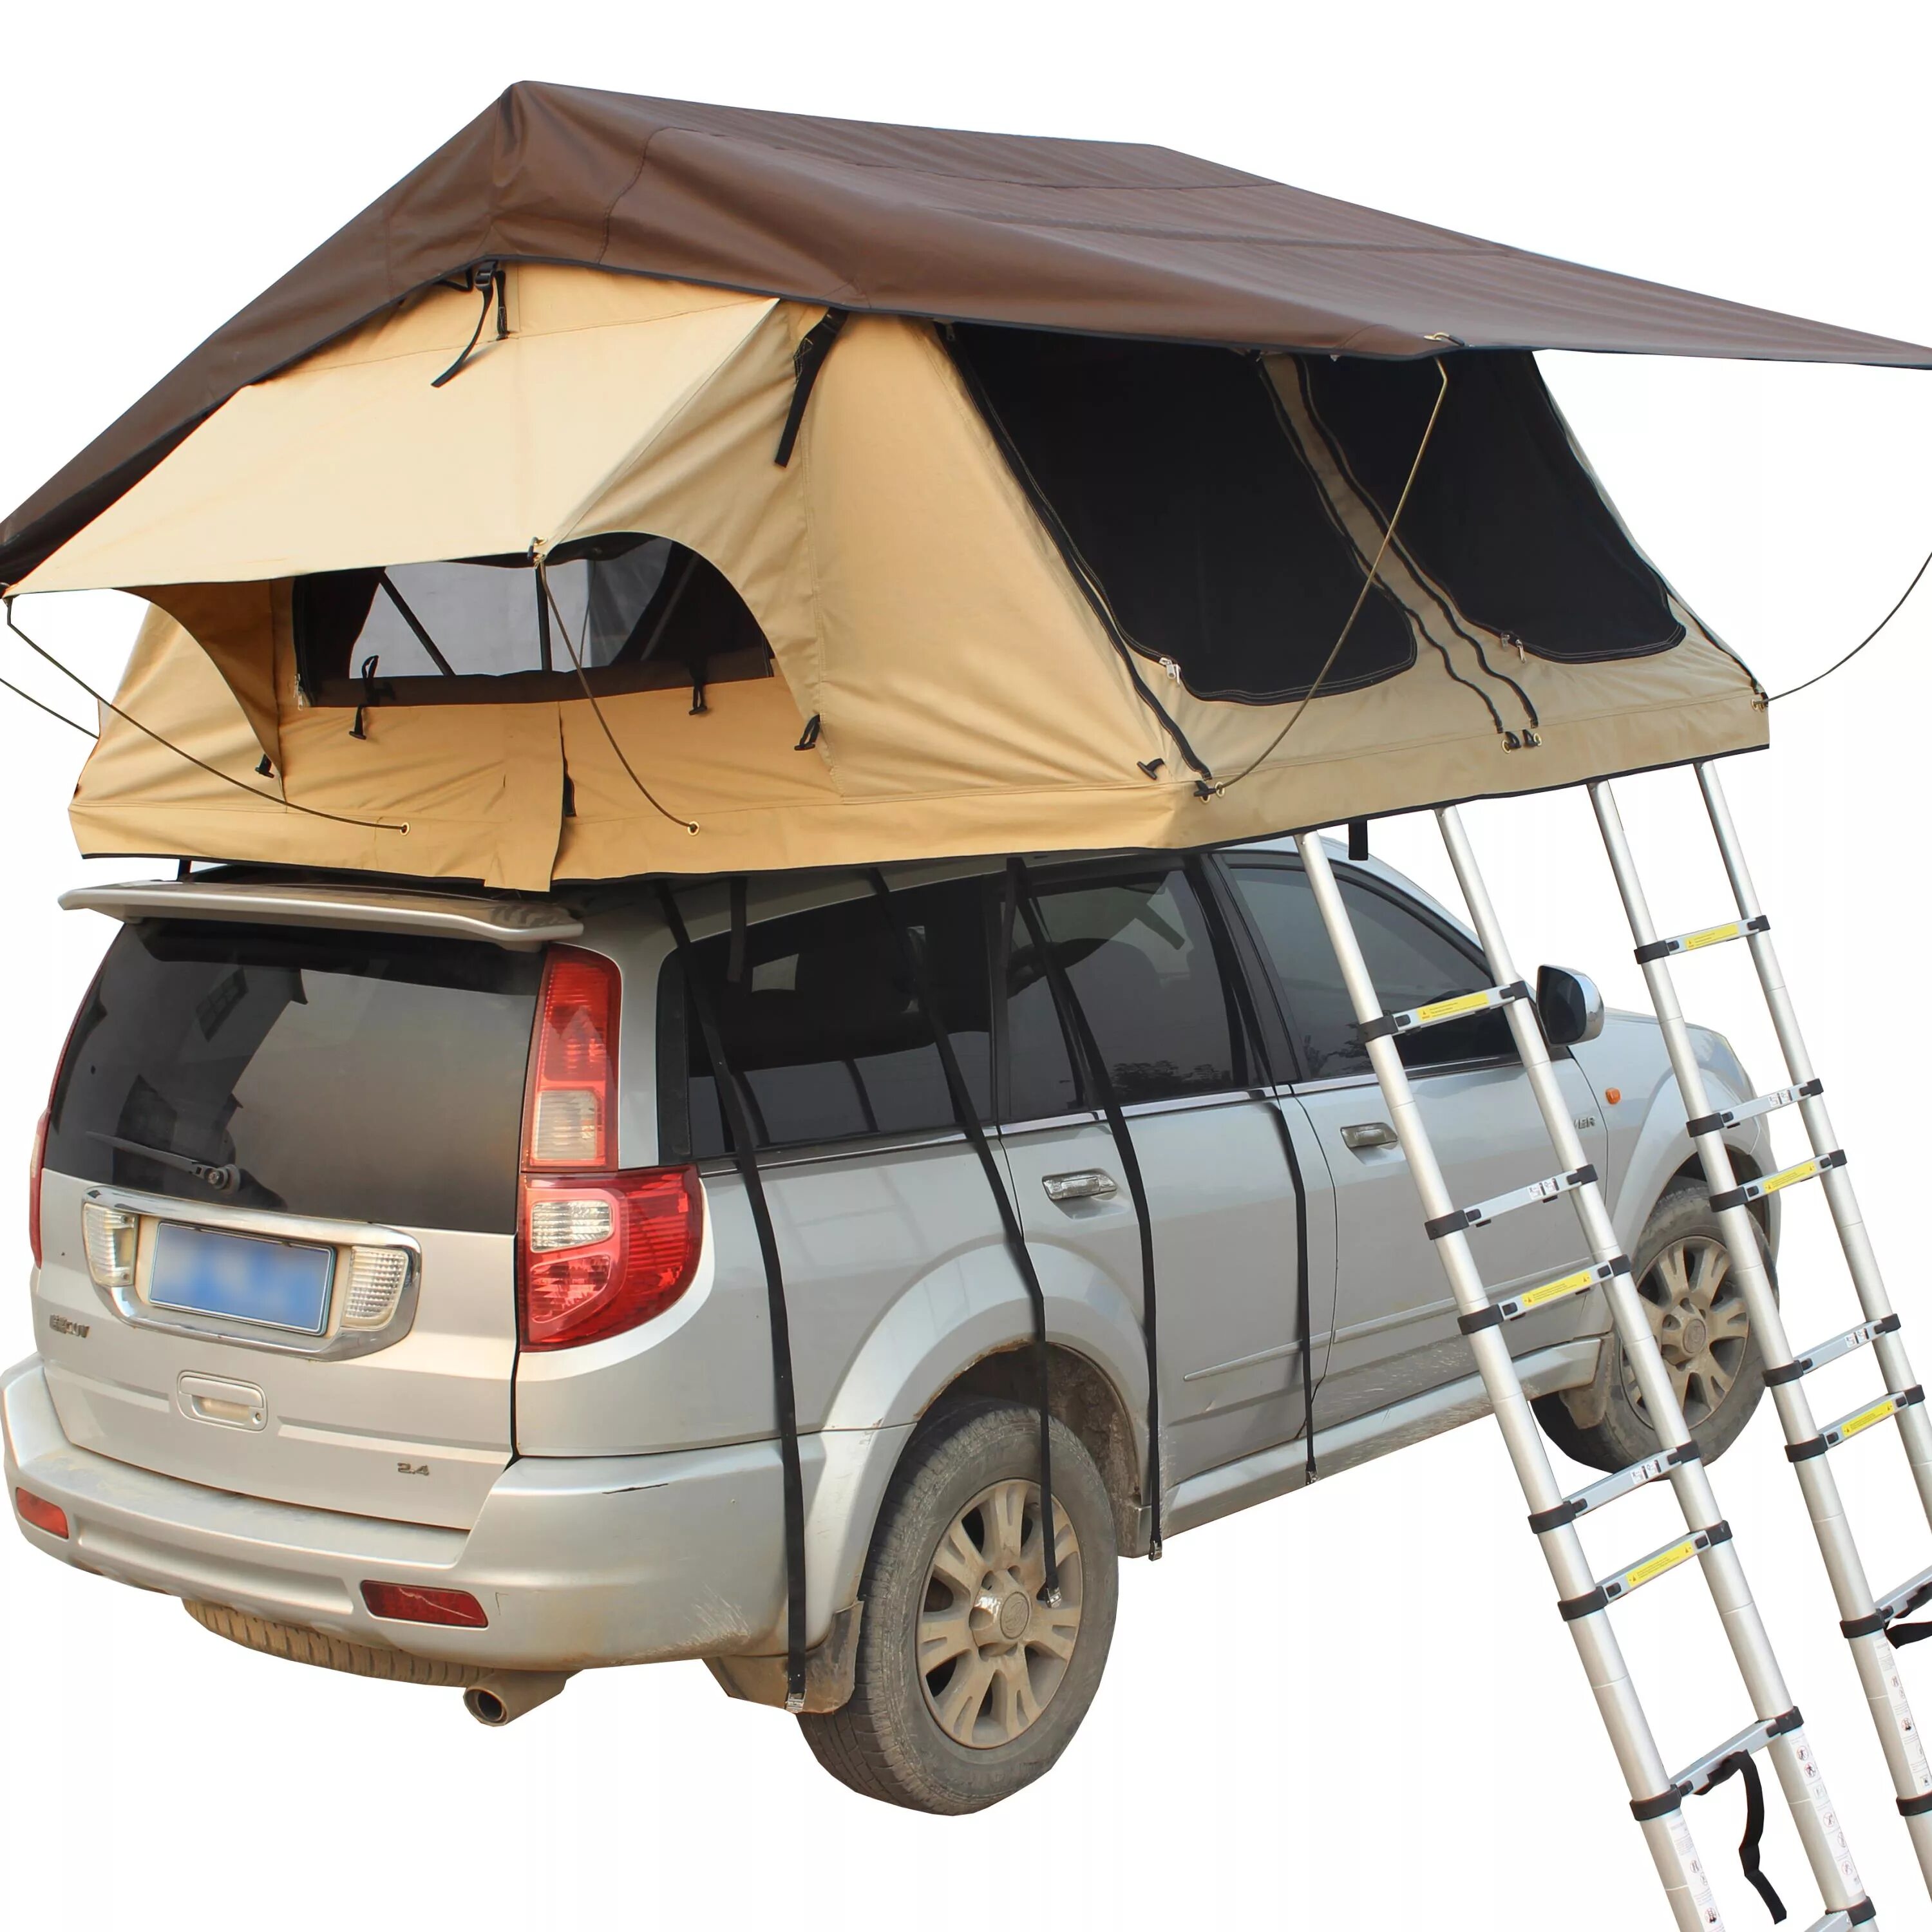 Куплю палатку на крышу автомобиля. Автопалатка электрическая Ort- Pathfinder 1. Палатка Оверленд на крышу автомобиля. Палатка на крышу Hover н3. Wl23019 палатка на крышу.